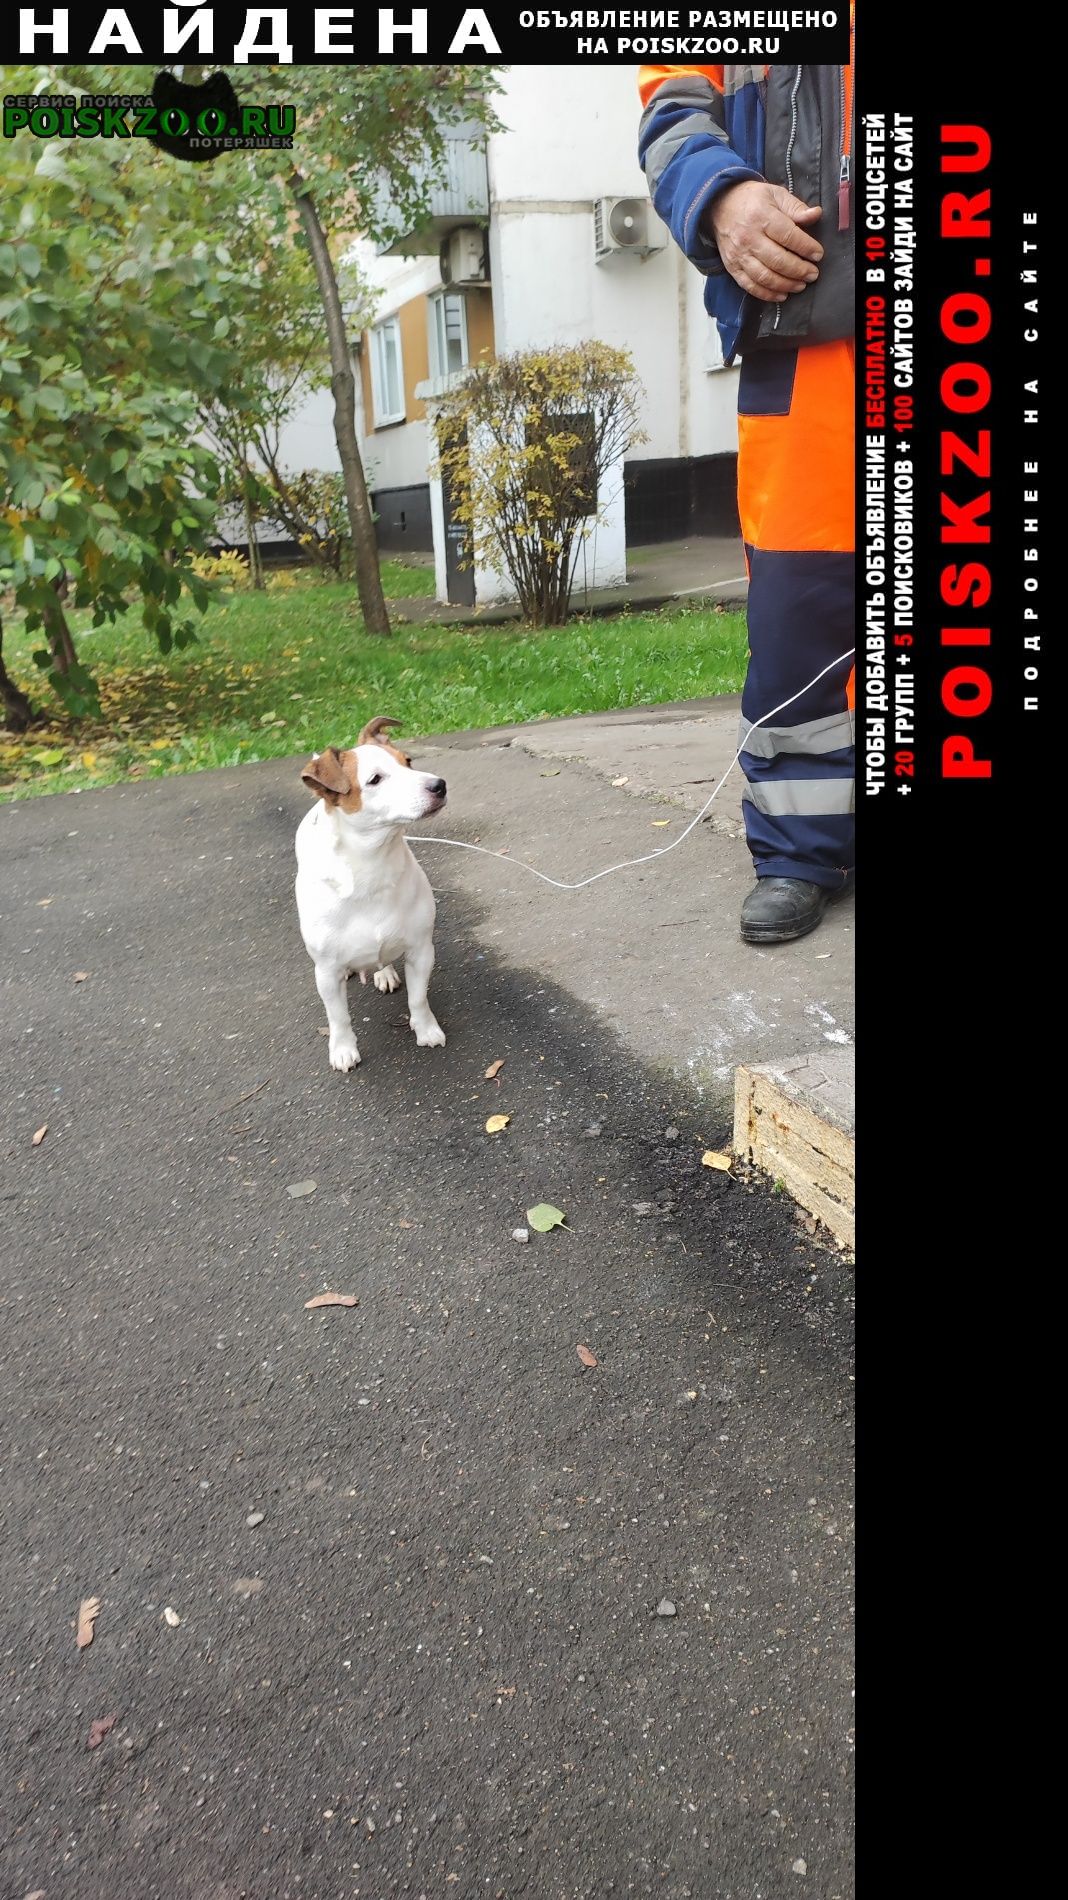 Найдена собака срочно Москва